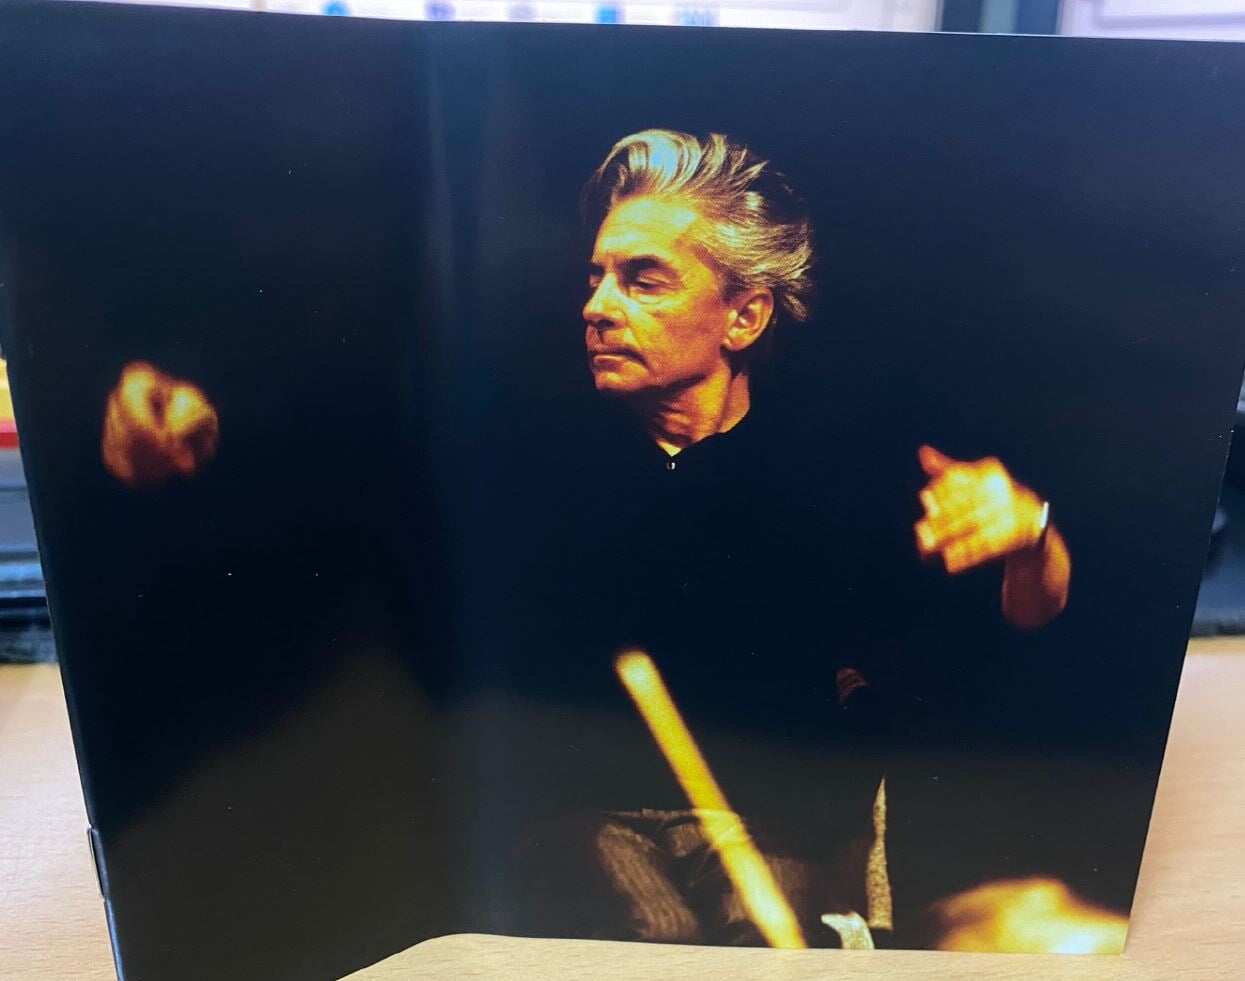 카라얀 - Herbert von Karajan - Master Recordings (탄생 100주년 기념 10Cds Boxset) [E.U발매]